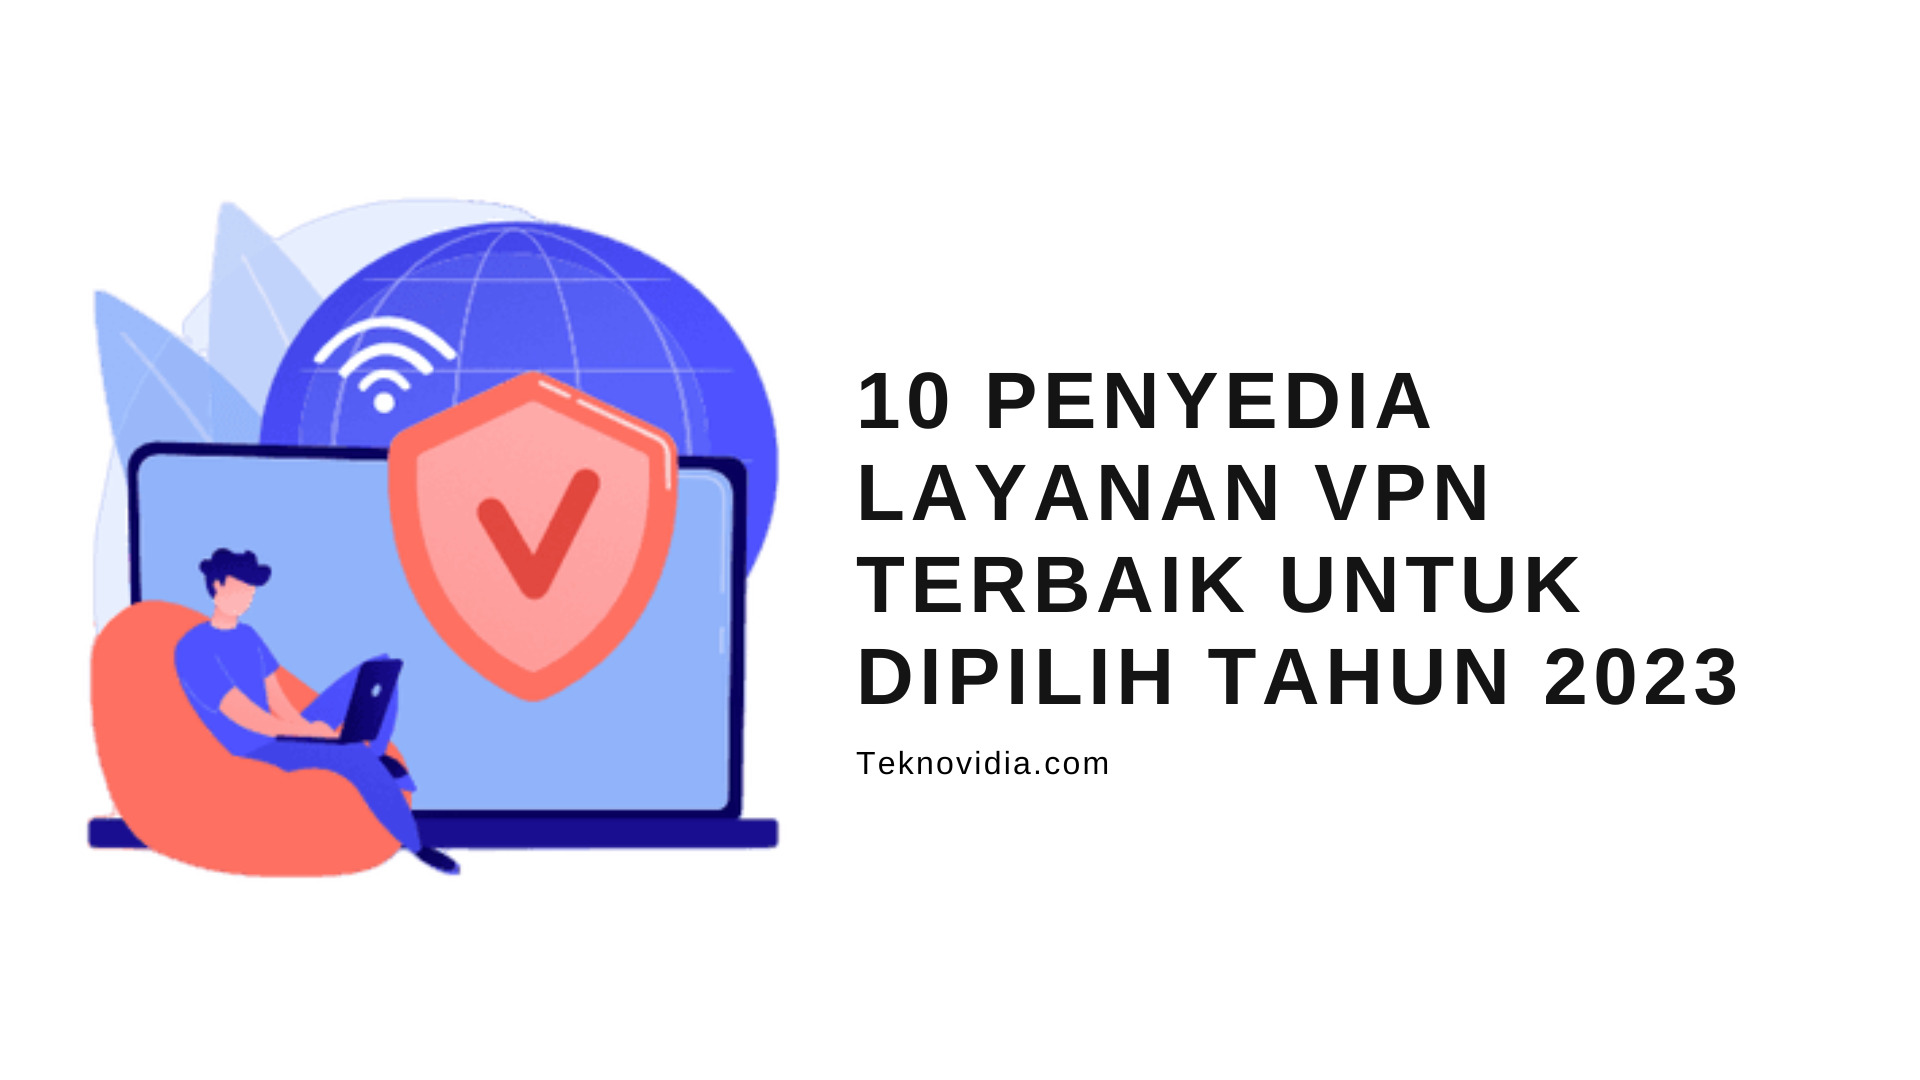 10 Penyedia Layanan VPN Terbaik Untuk Dipilih Tahun 2023